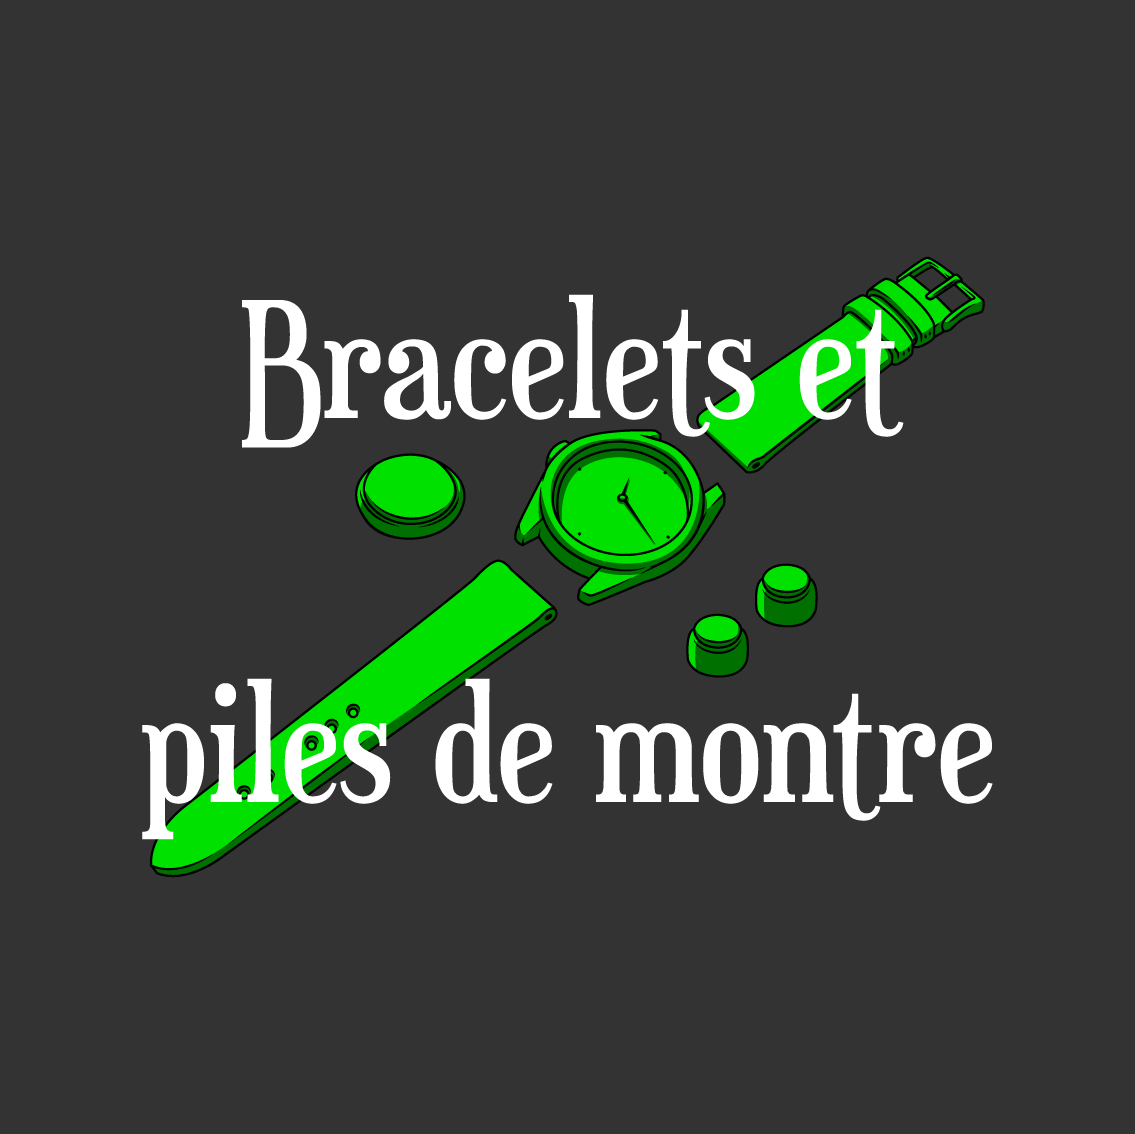 Bracelets et piles de montre - Illustration et texte